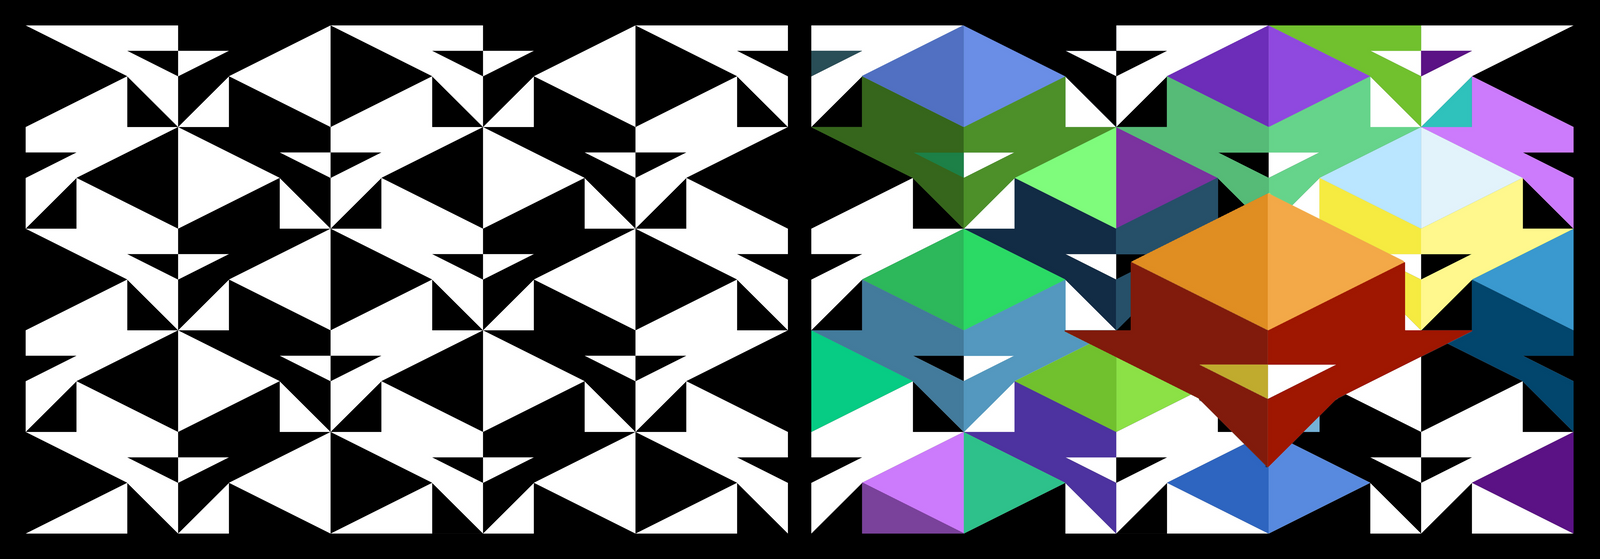 Pattern Design by JustMarDesign on DeviantArt